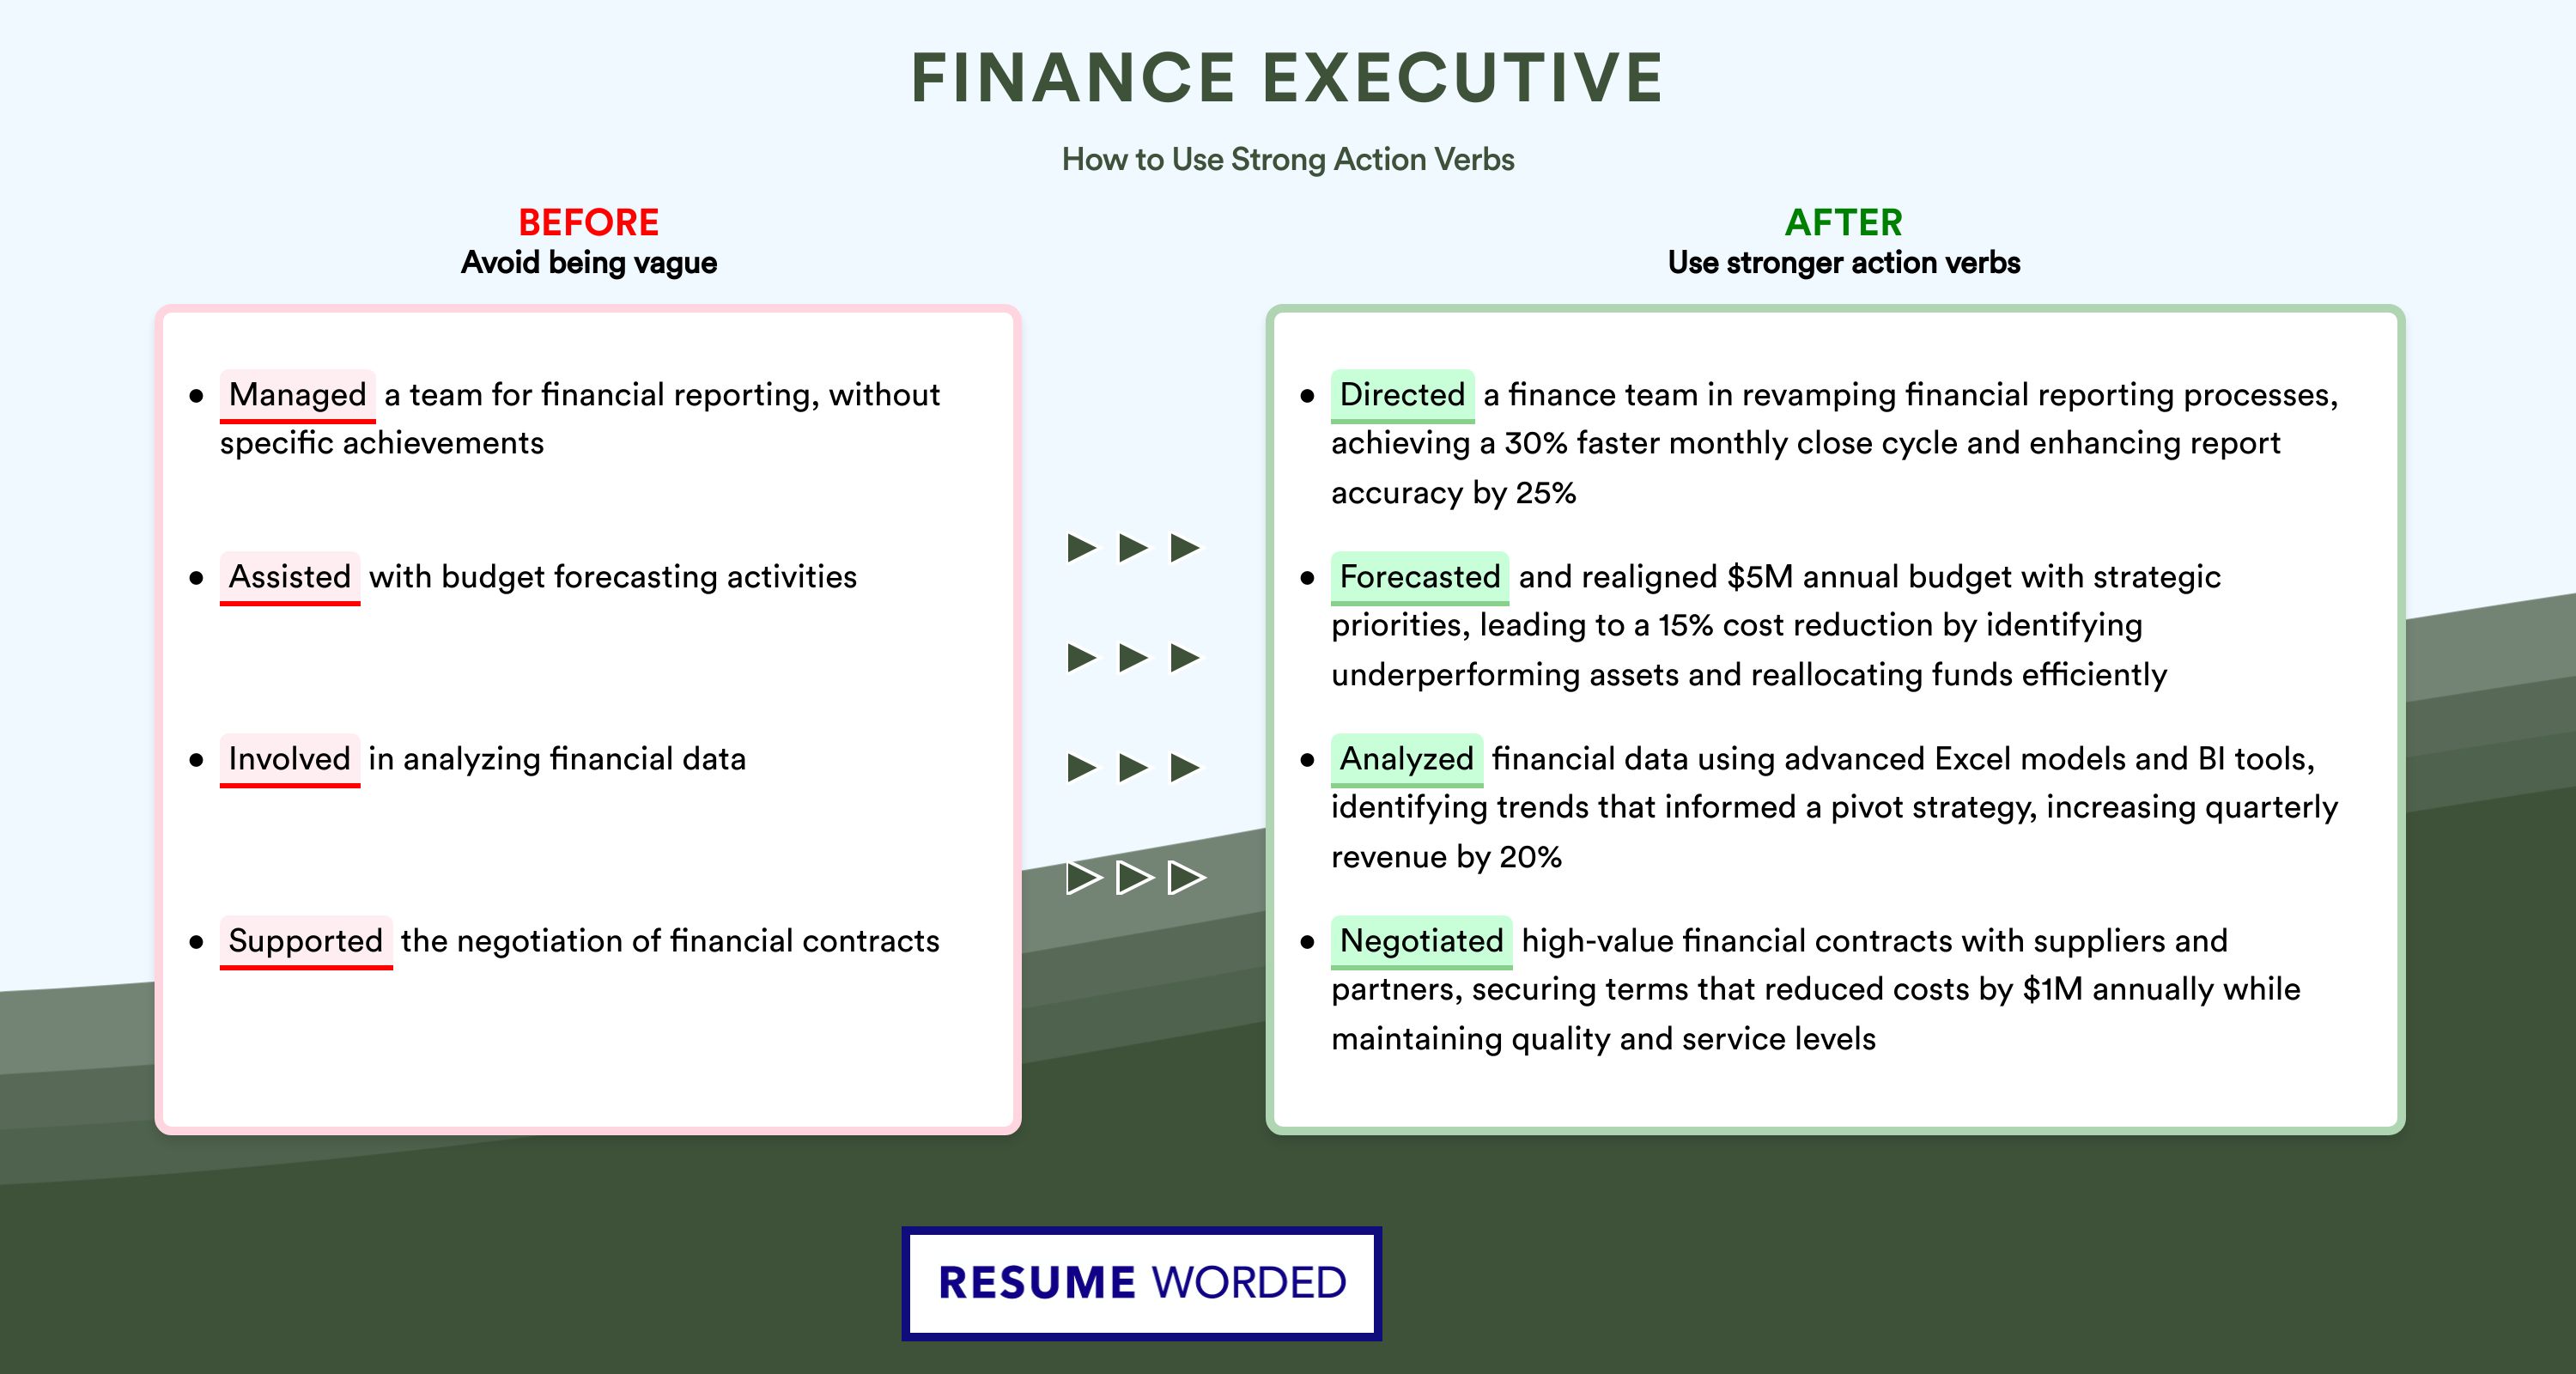 Action Verbs for Finance Executive